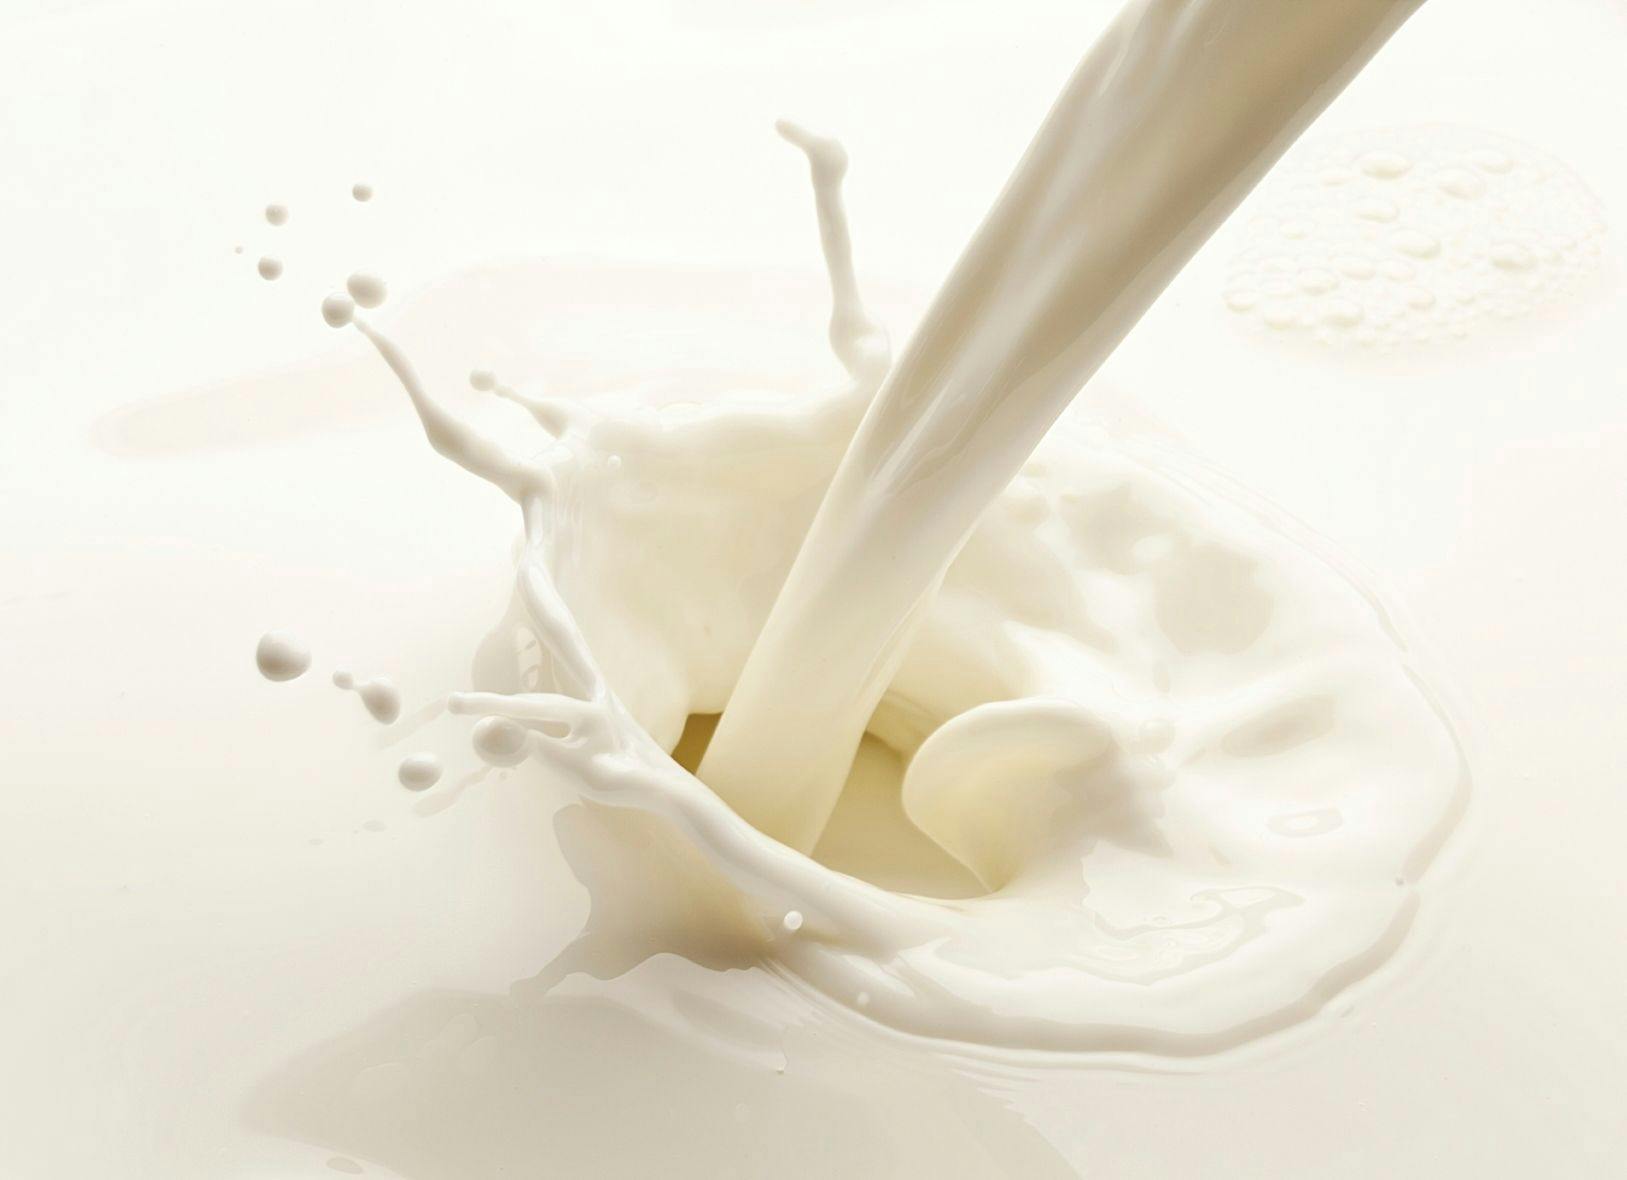 Simpler Test Method Analyzes Vitamin D2 in Fortified Milk